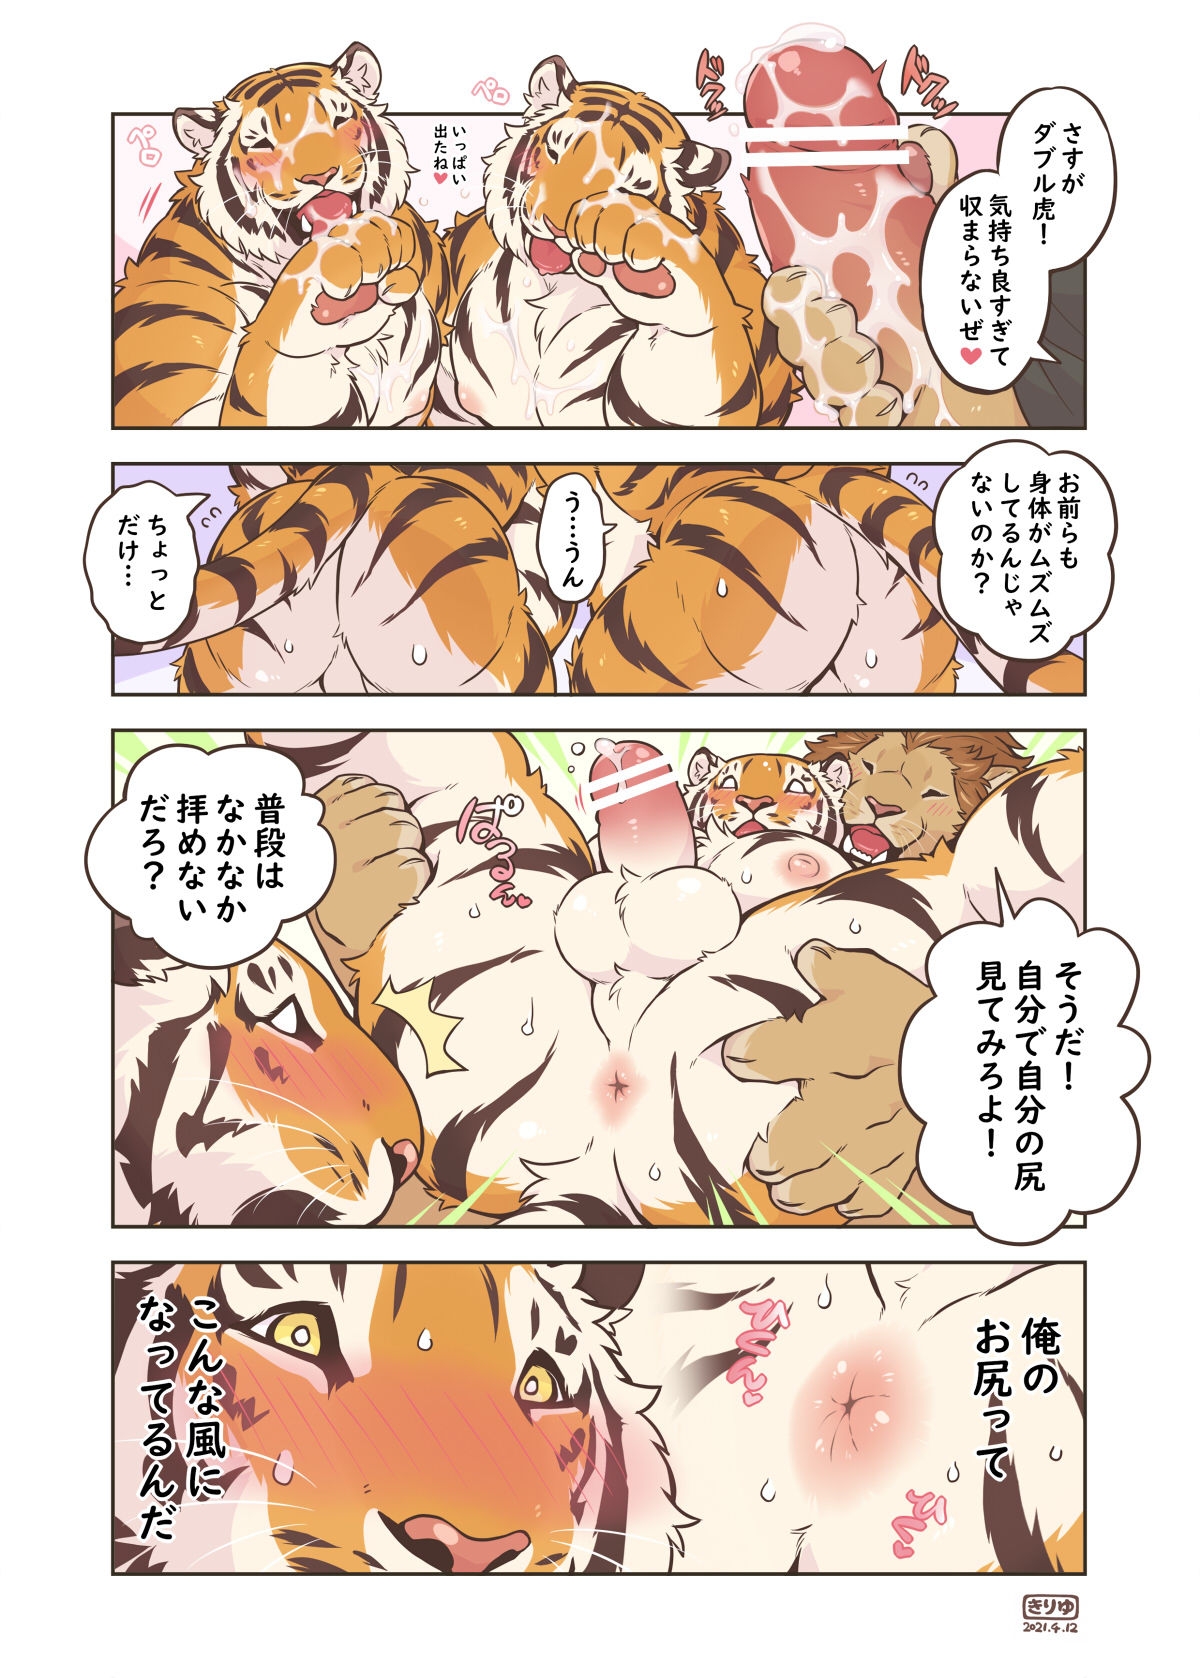 [Kiriyu-o0v0o [Tfws (Kirin)] (giraffe914)] Lyan-san and Toratake-chan 63